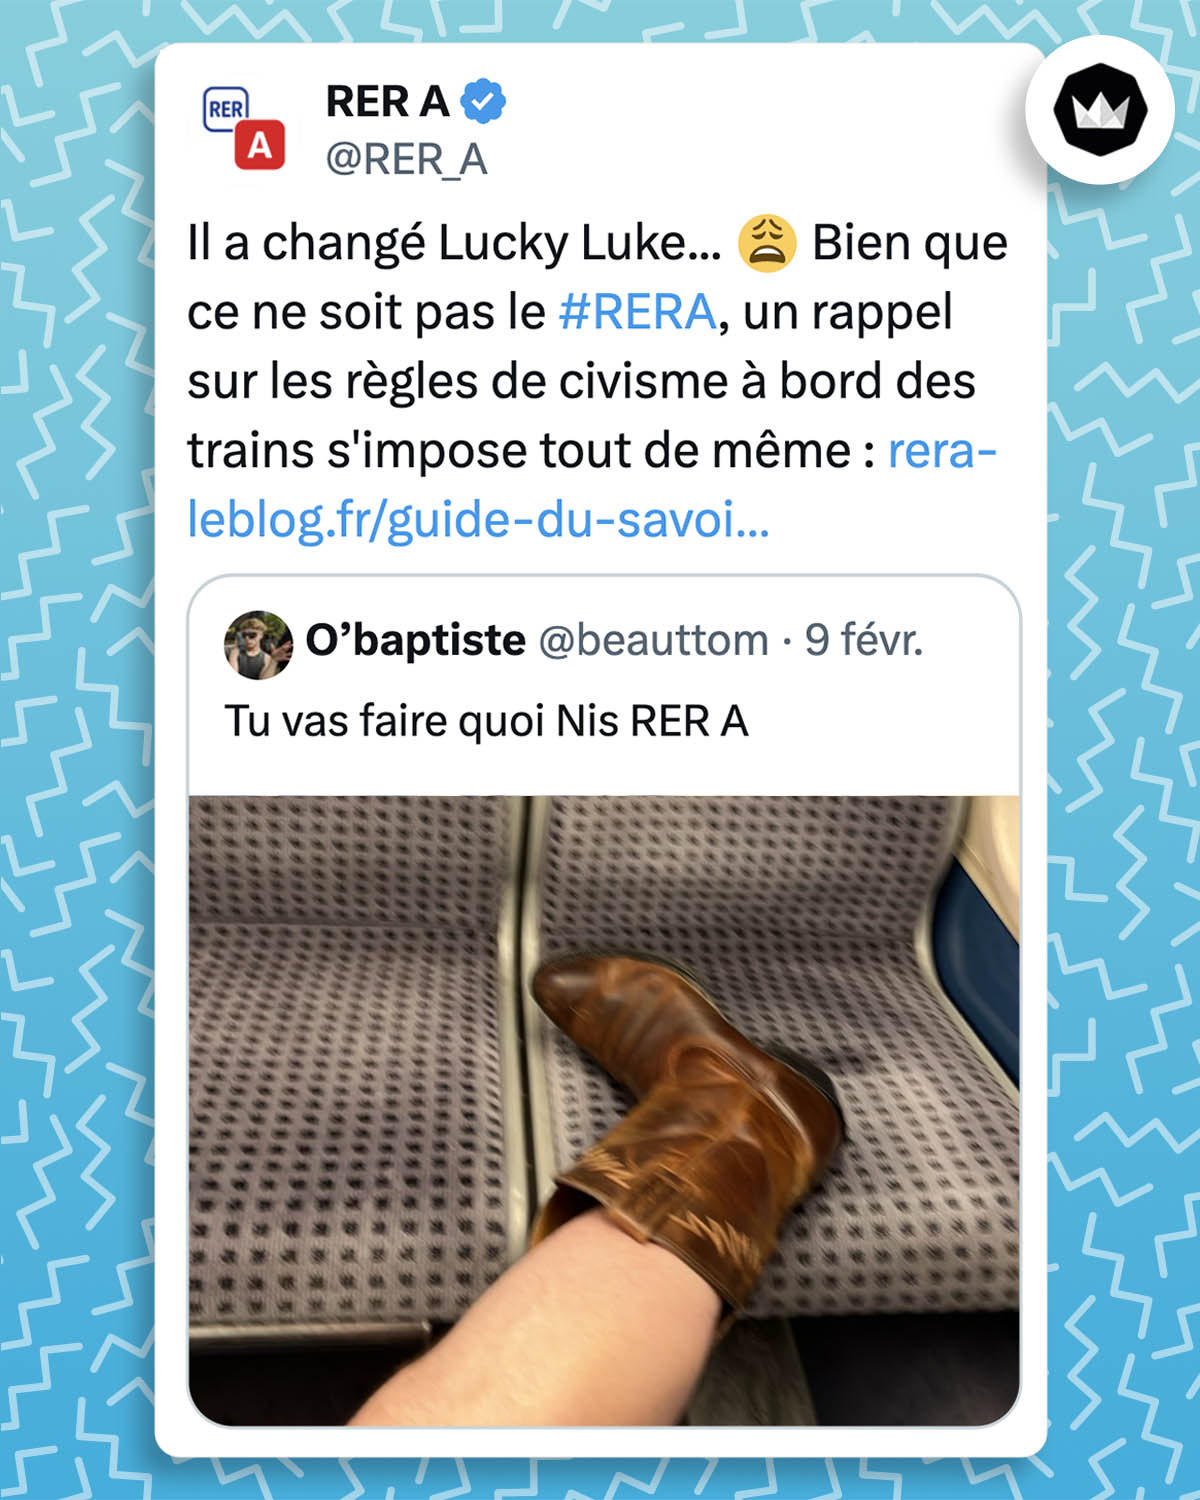 Internaute : 
"Tu vas faire quoi Nis RER A" accompagné d'une photo d'un pied chaussé d'une santiag sur un siège du RER B
@RER_A :
Il a changé Lucky Luke... 😩 Bien que ce ne soit pas le #RERA, un rappel sur les règles de civisme à bord des trains s'impose tout de même : https://rera-leblog.fr/guide-du-savoir-voyager-dans-le-rer-a/